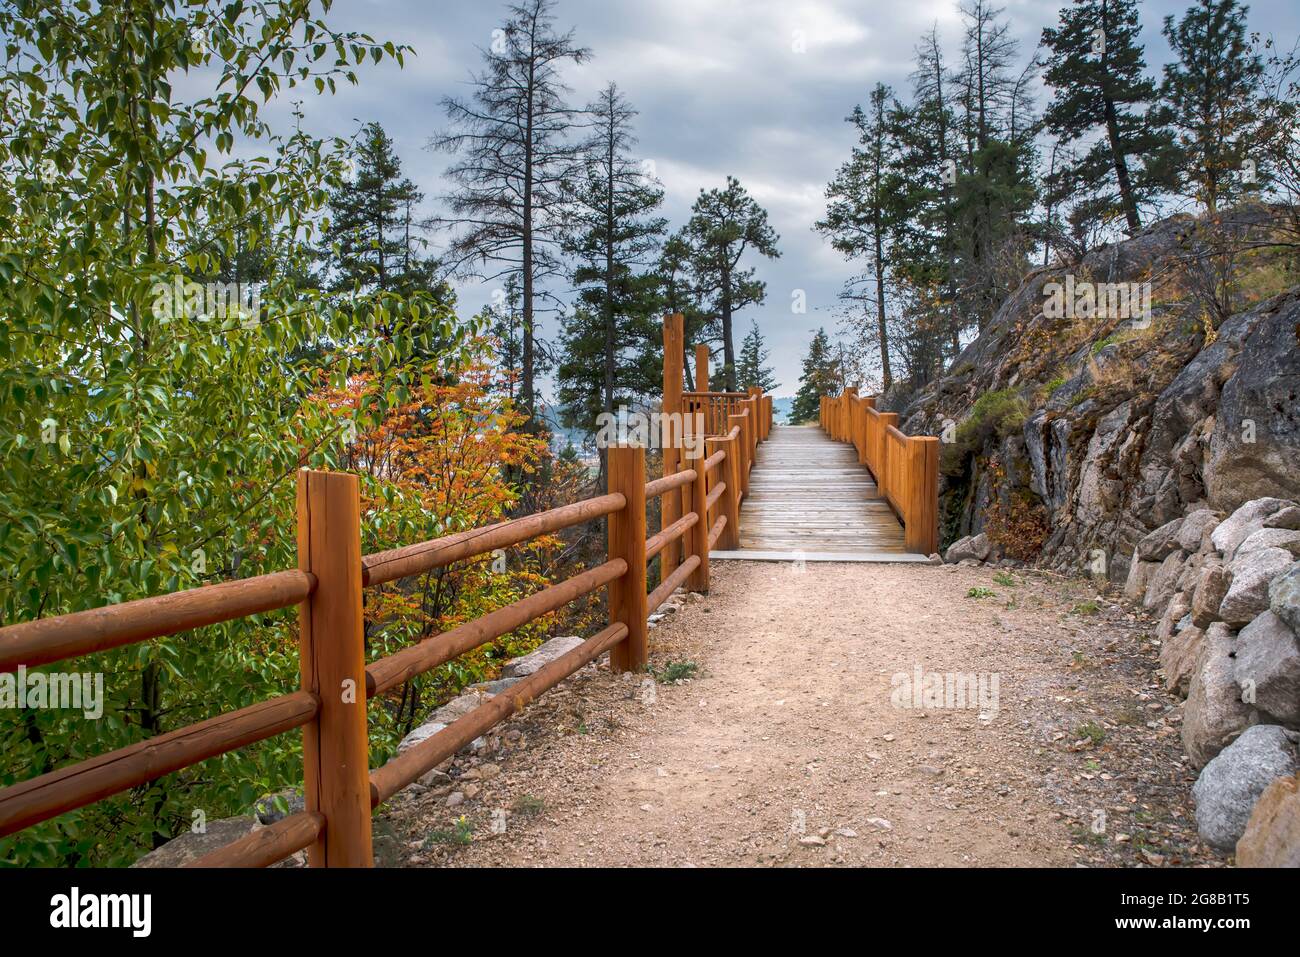 strada sterrata per un ponte di legno con un recinto di tronchi vicino a una scogliera di pietra tra gli alberi. Cielo blu con nuvole sullo sfondo. Foto Stock